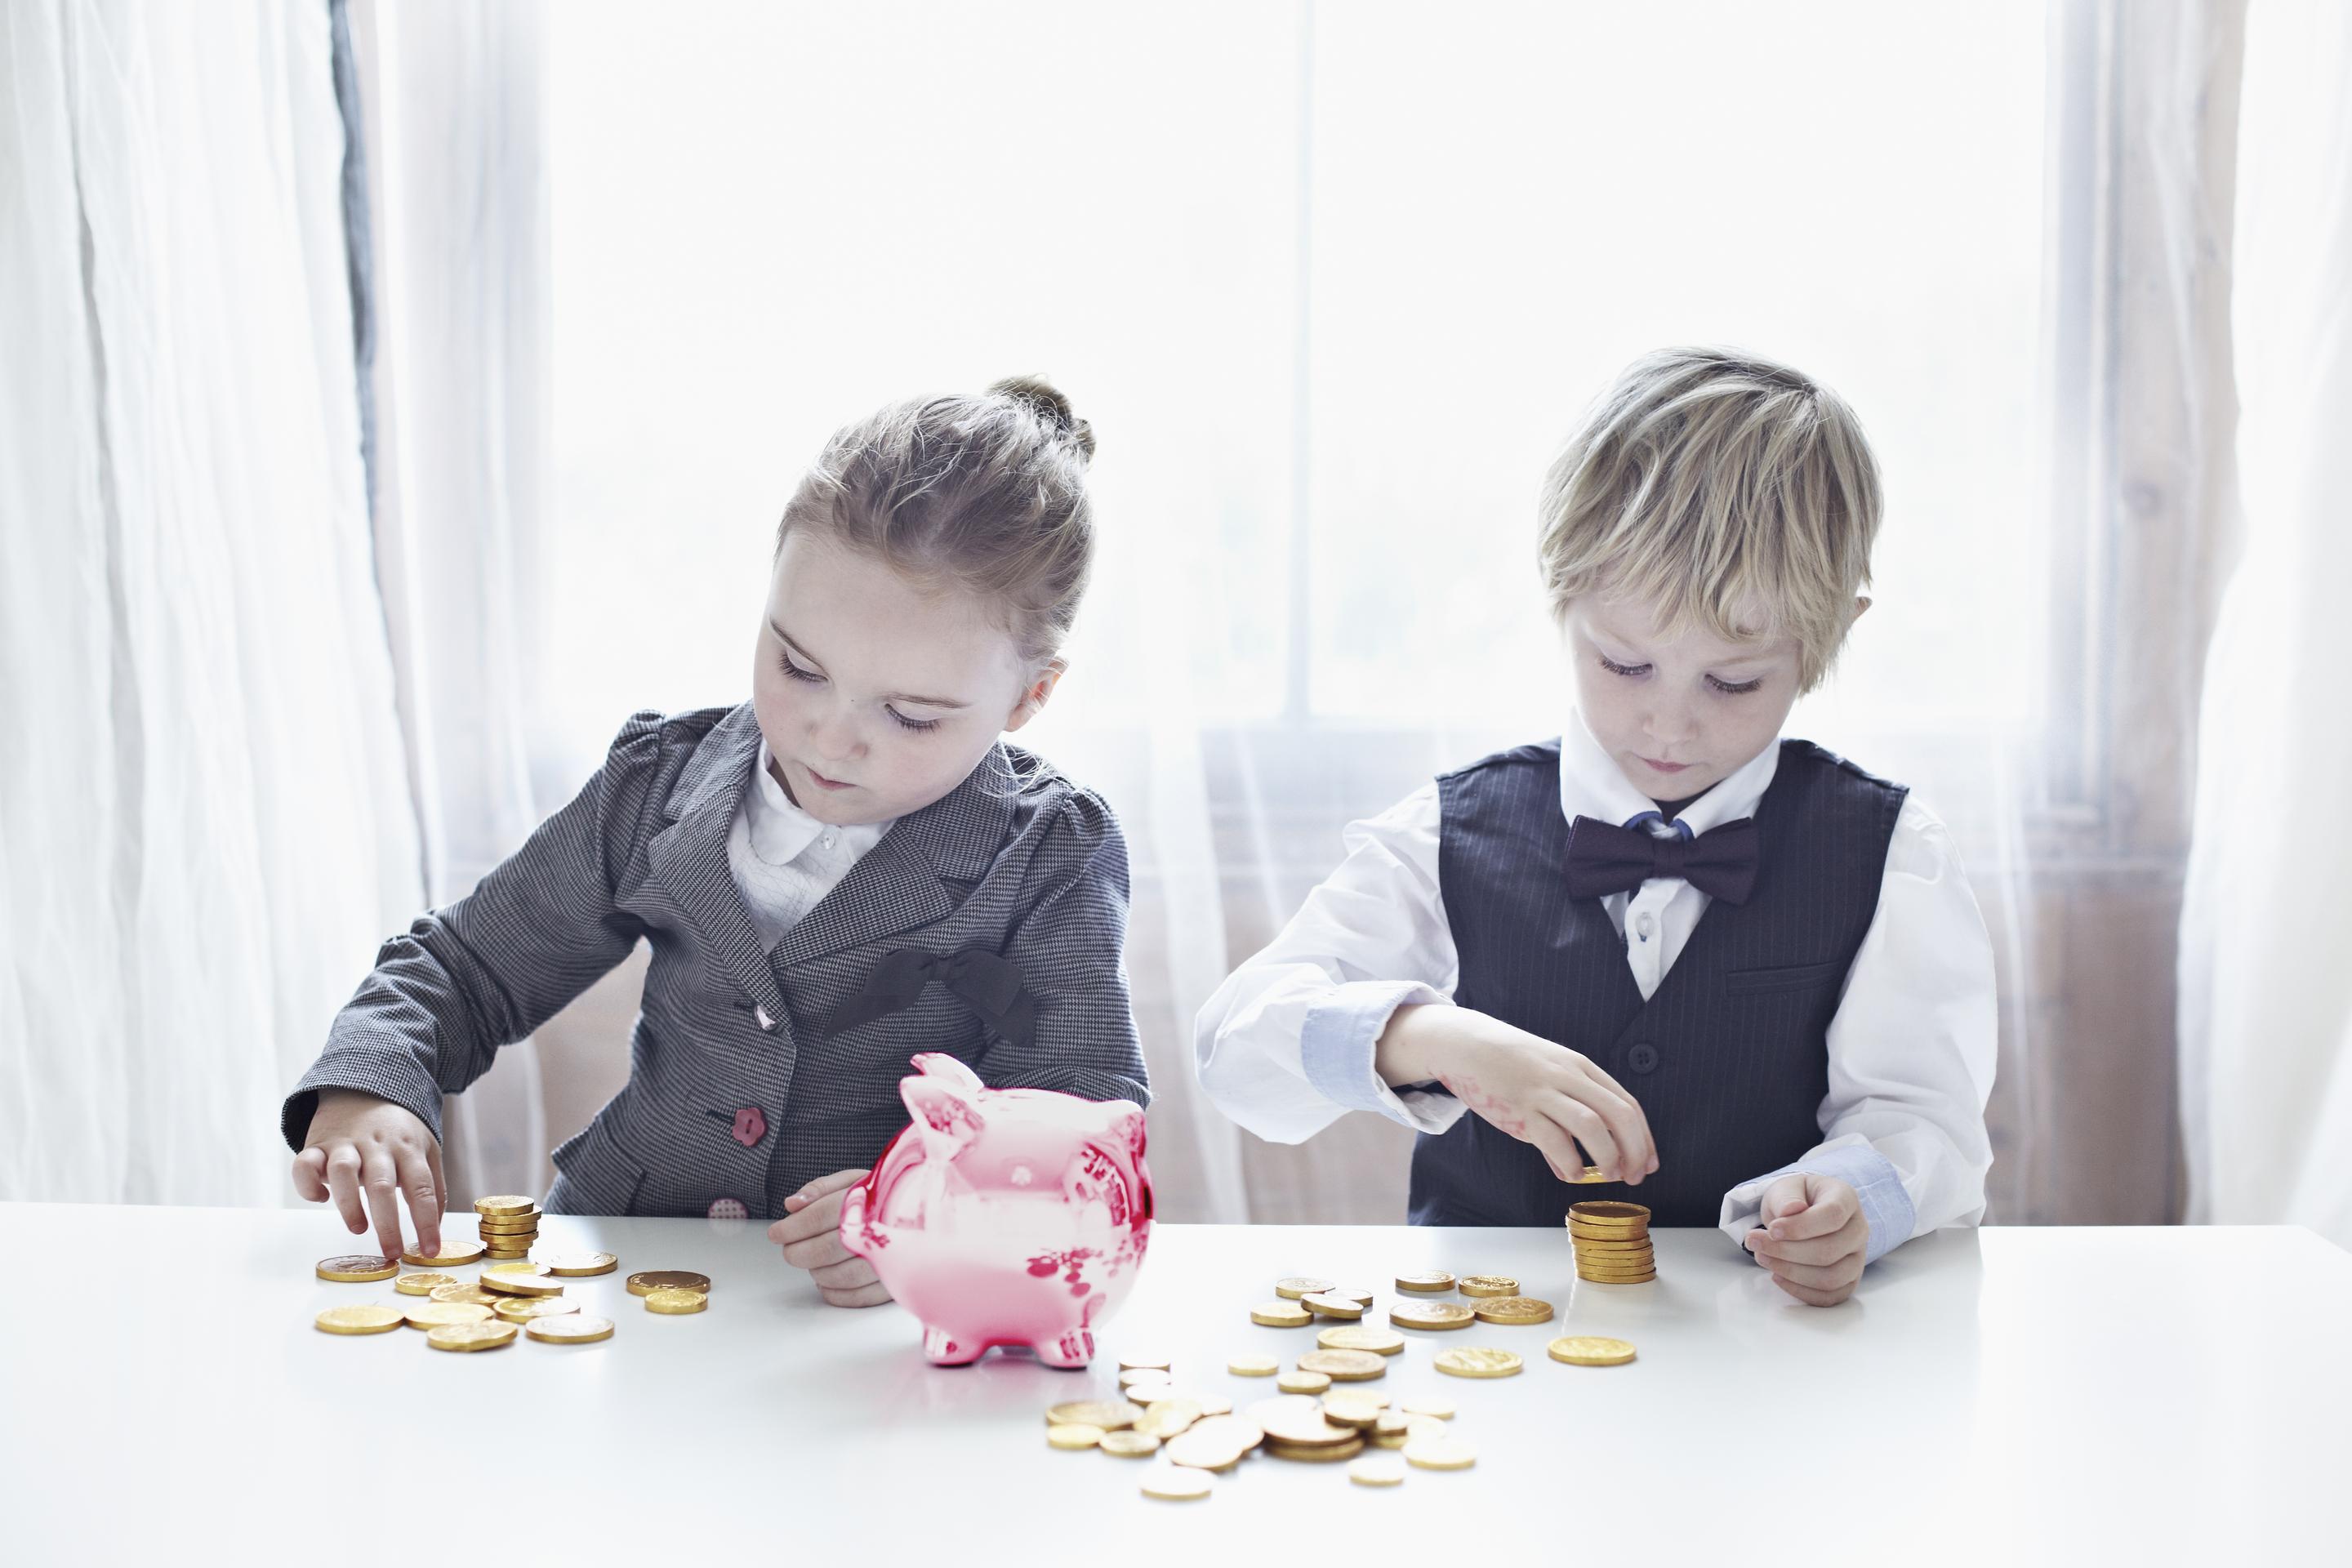 Карманные расходы: как научить ребенка ценить деньги